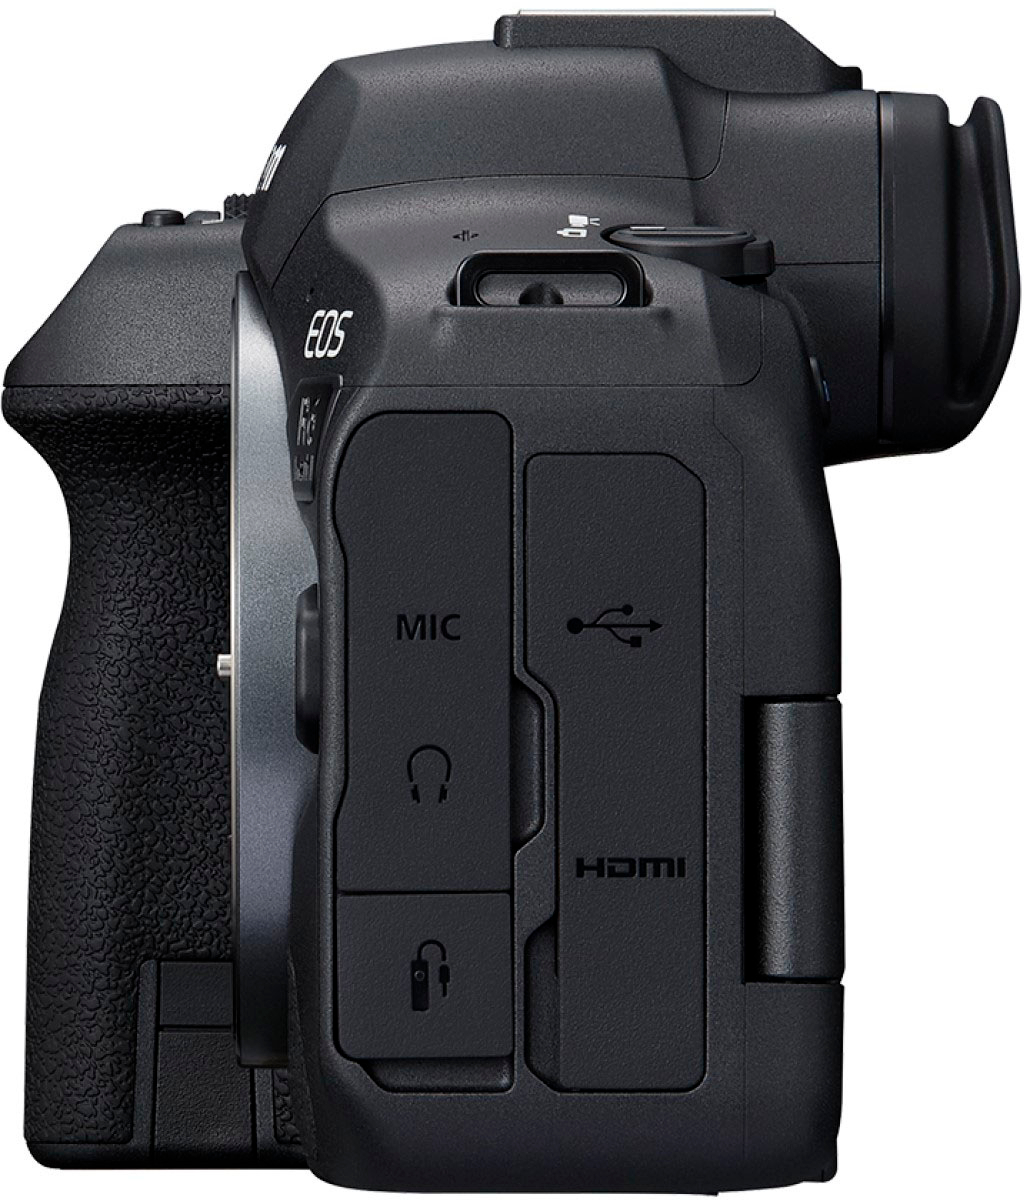 Canon EOS R6 Mark II - Ceproma